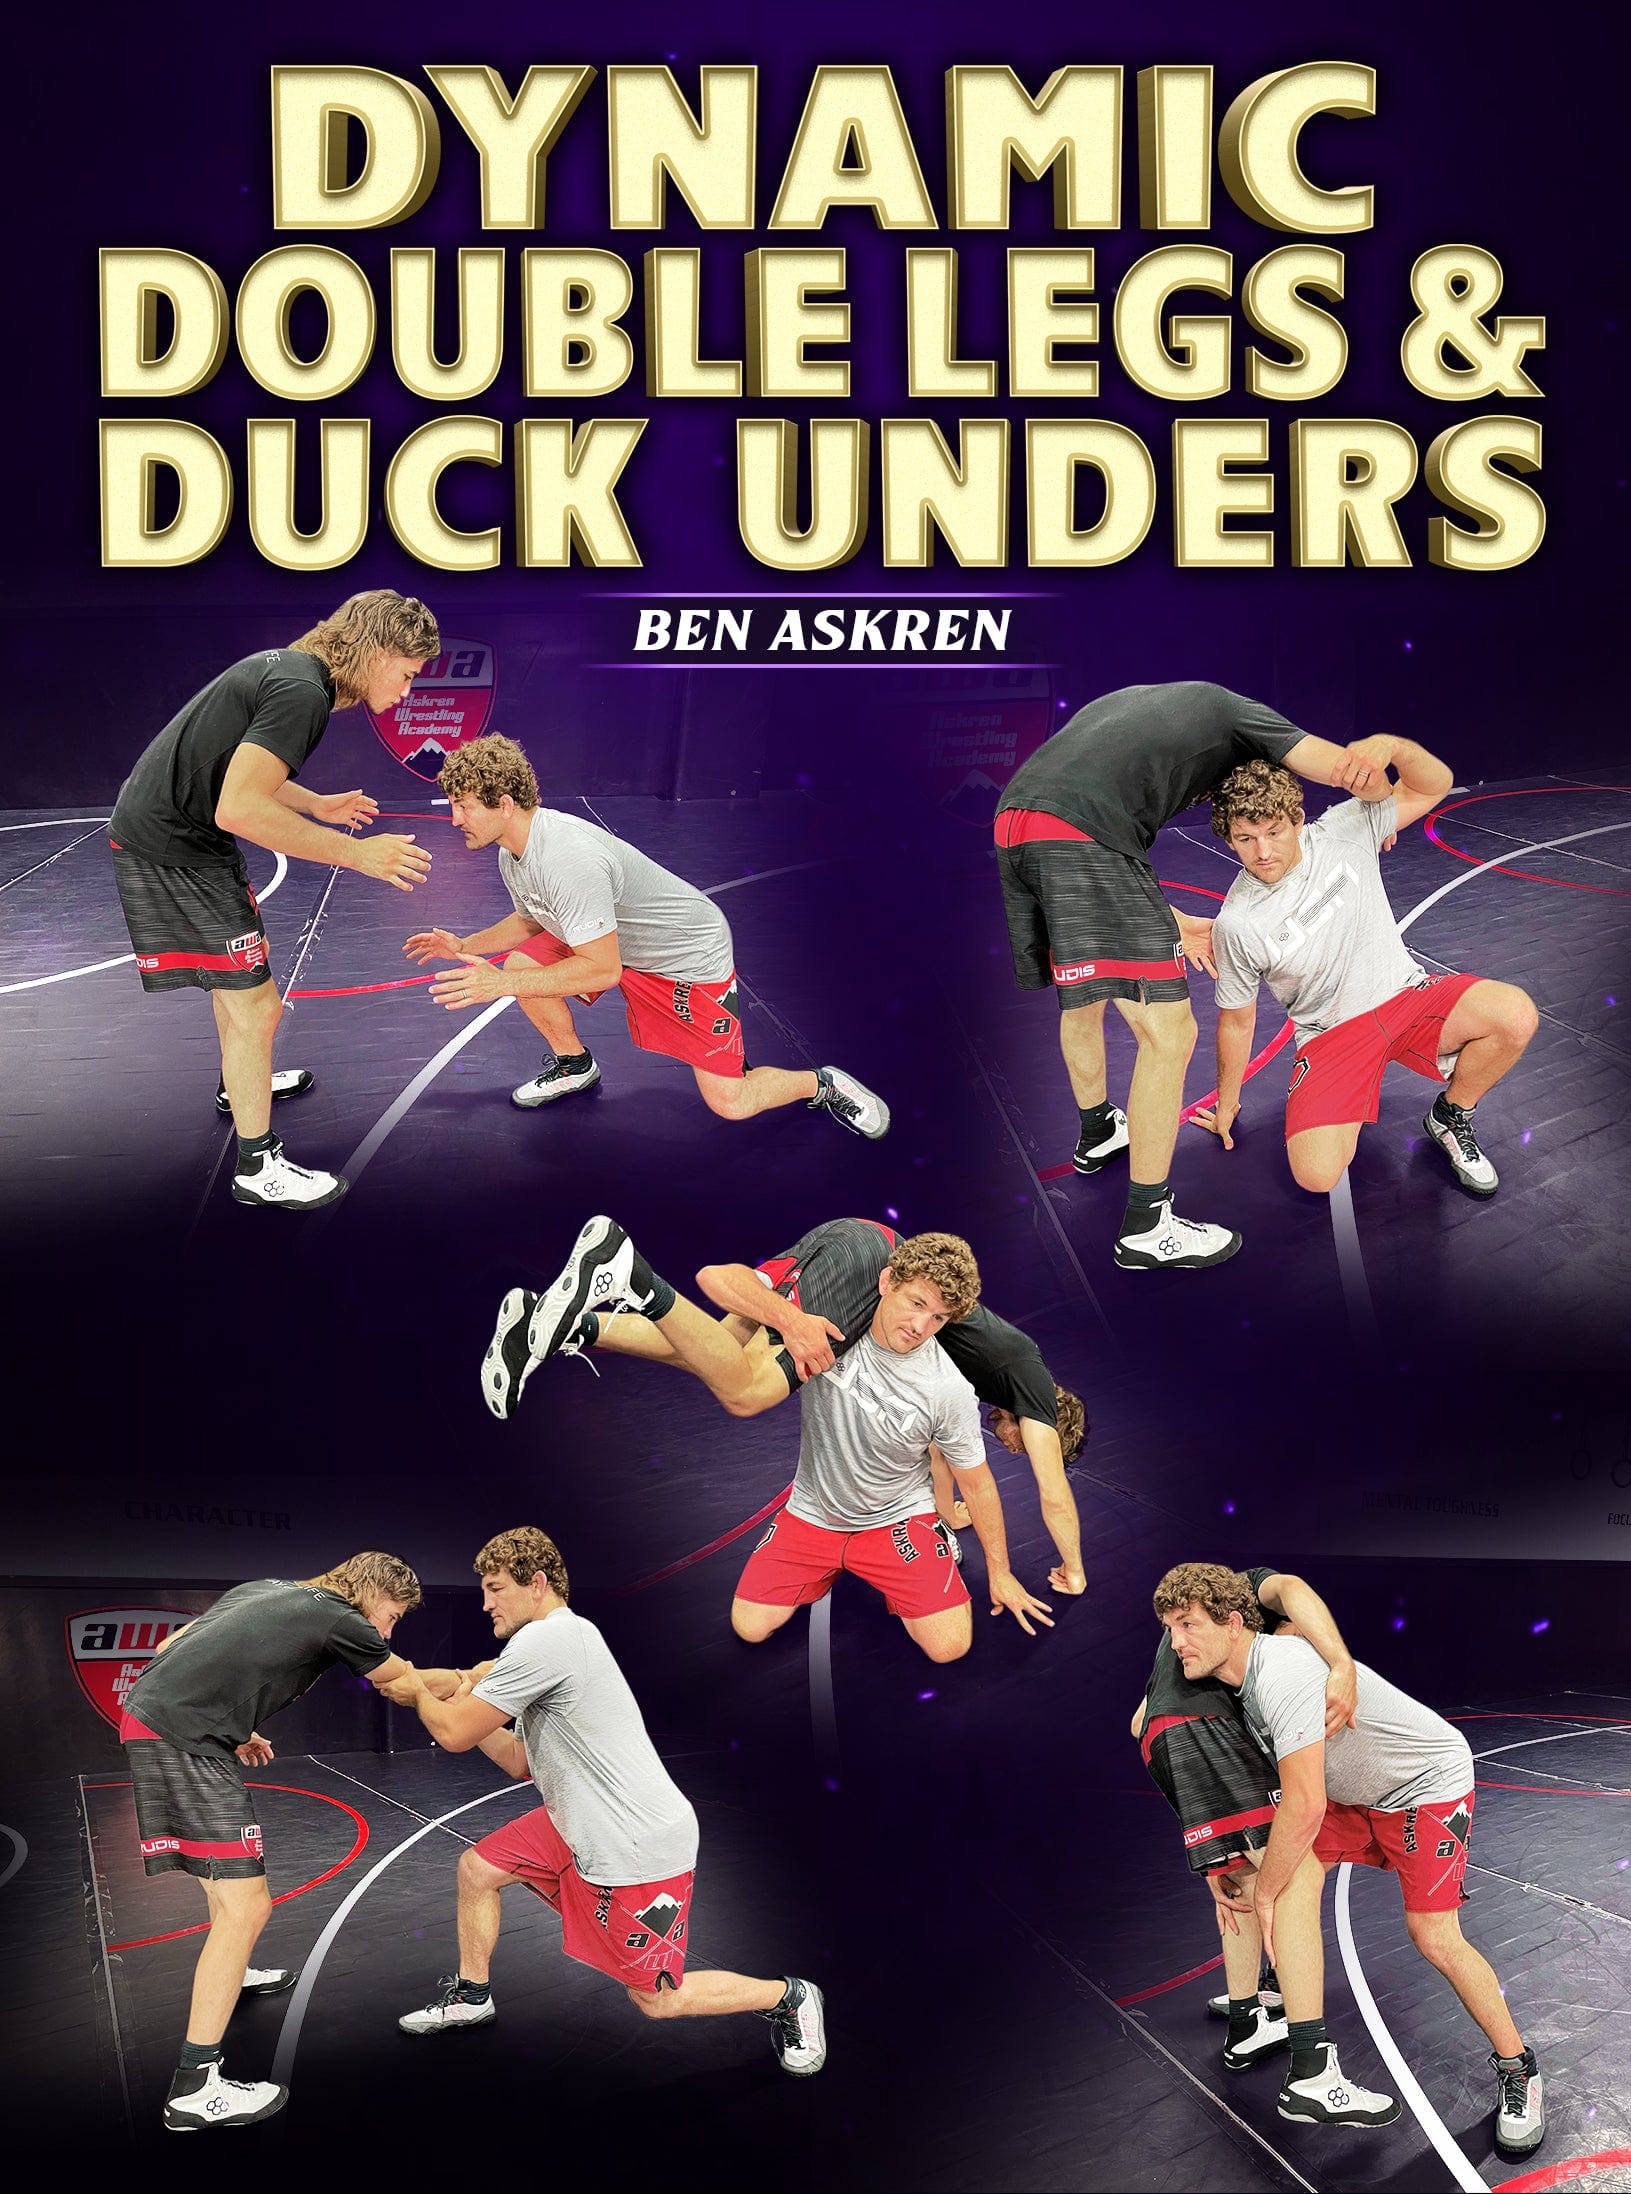 Dynamic Double Legs & Duck Unders by Ben Askren - Fanatic Wrestling